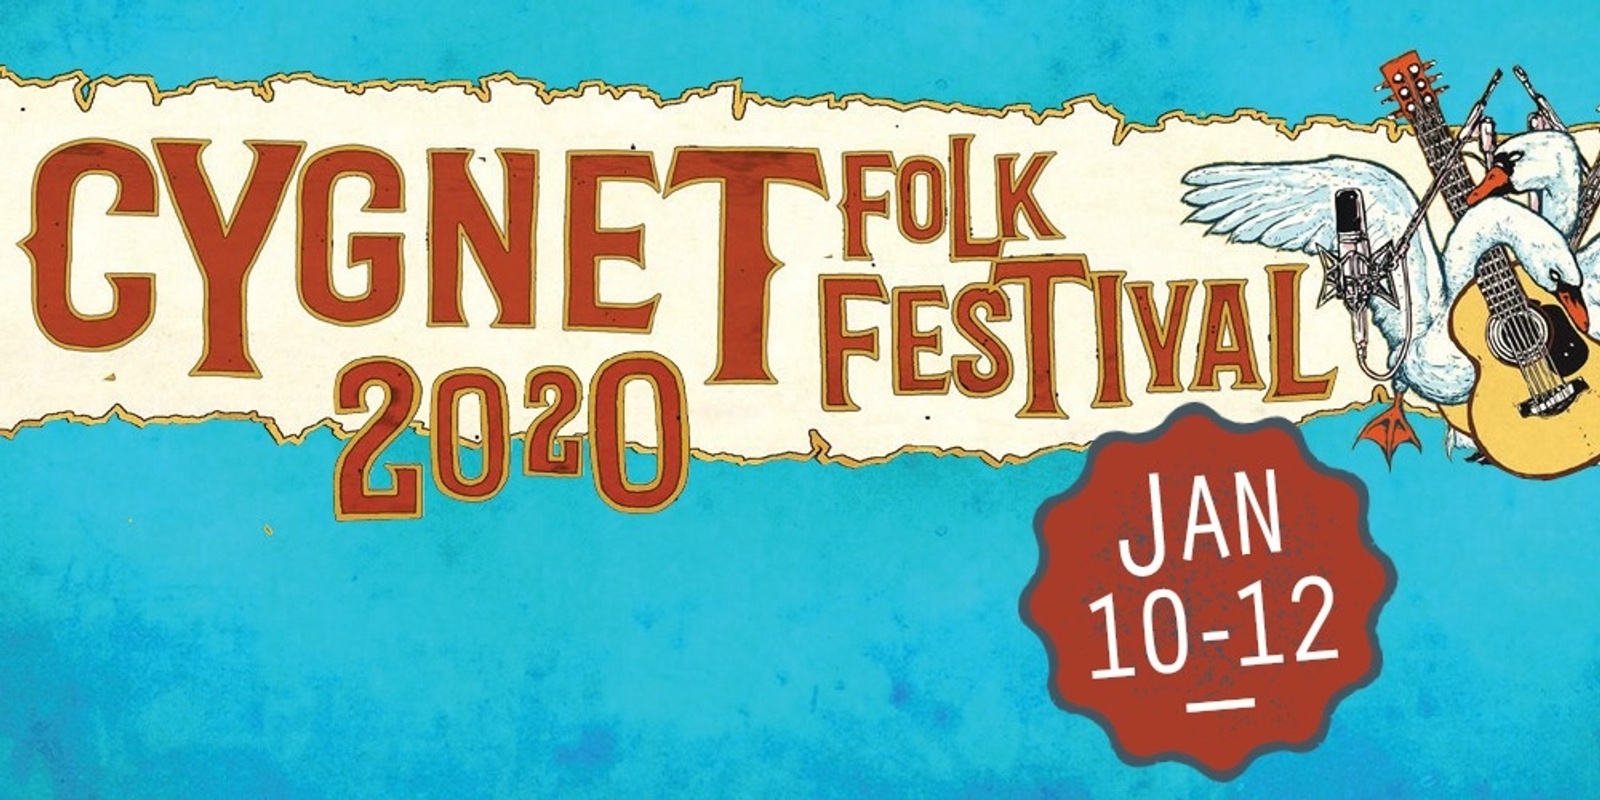 Banner image for Cygnet Folk Festival